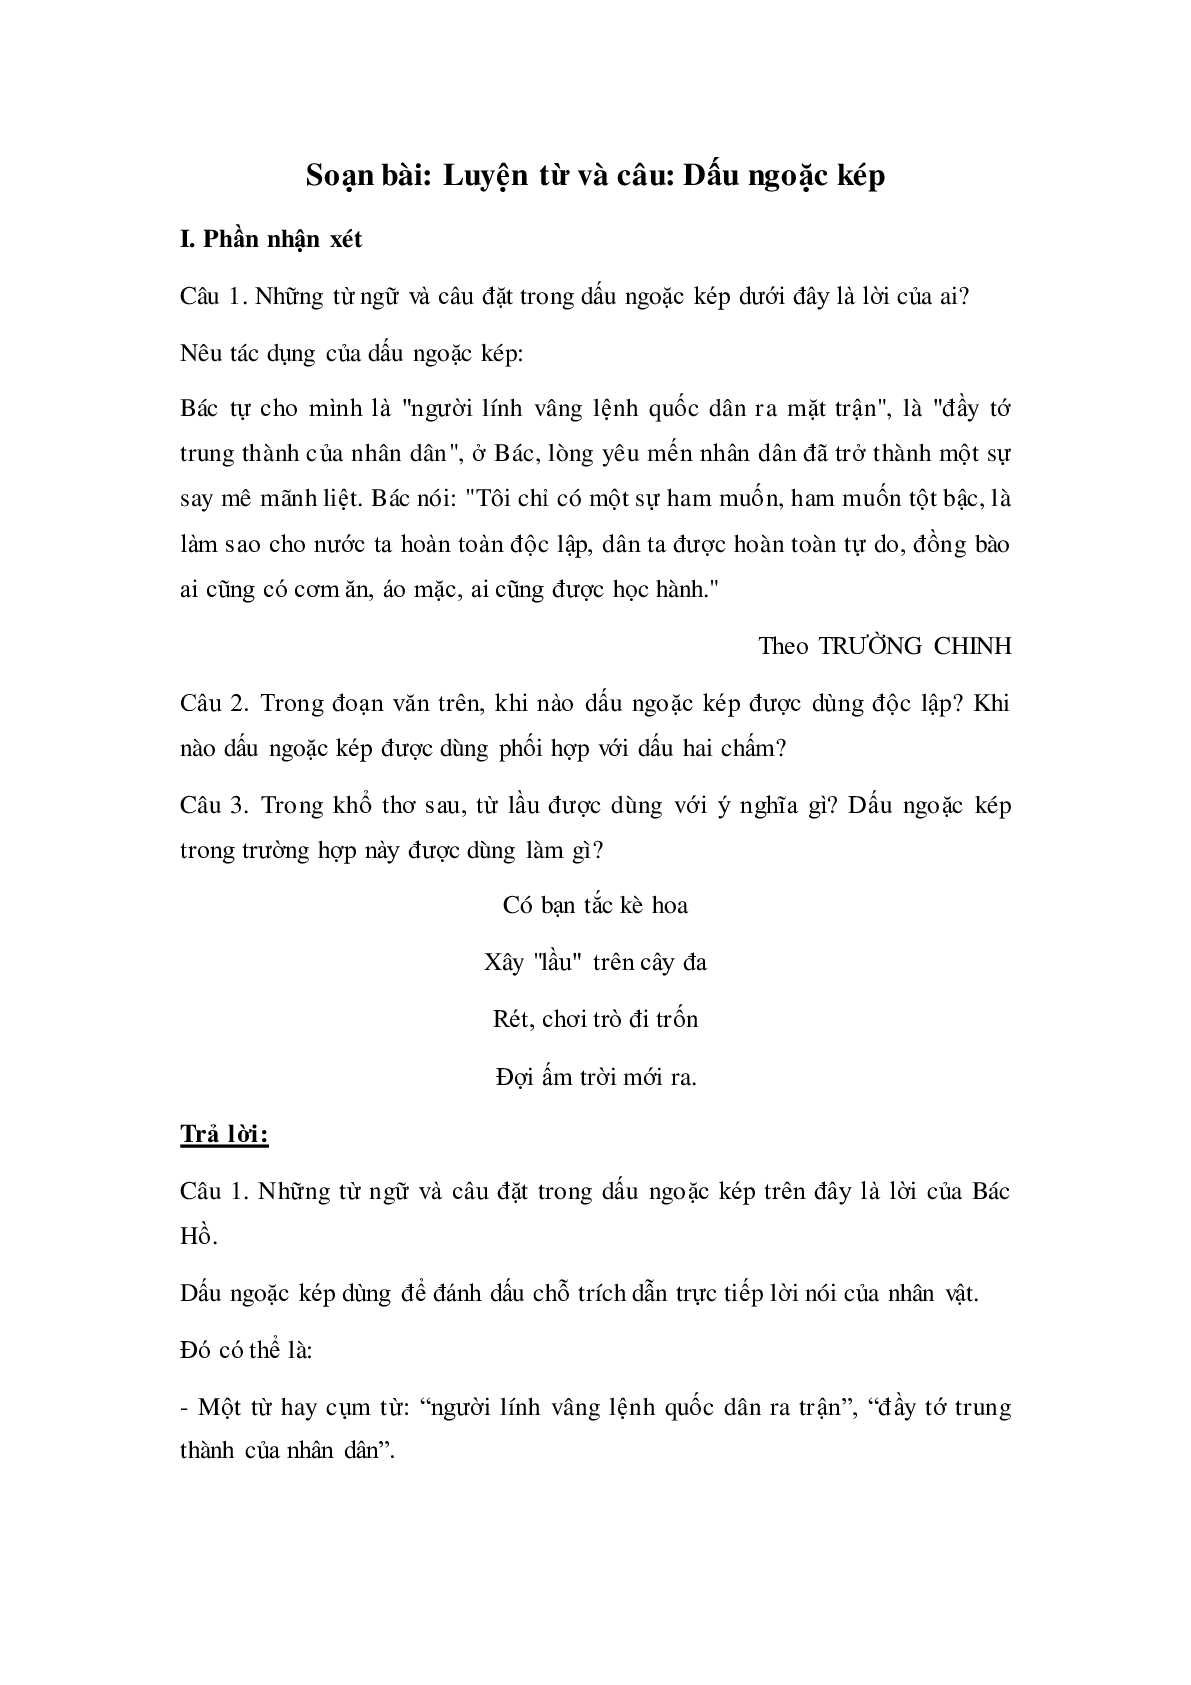 Soạn Tiếng Việt lớp 4: Luyện từ và câu: Dấu ngoặc kép mới nhất (trang 1)